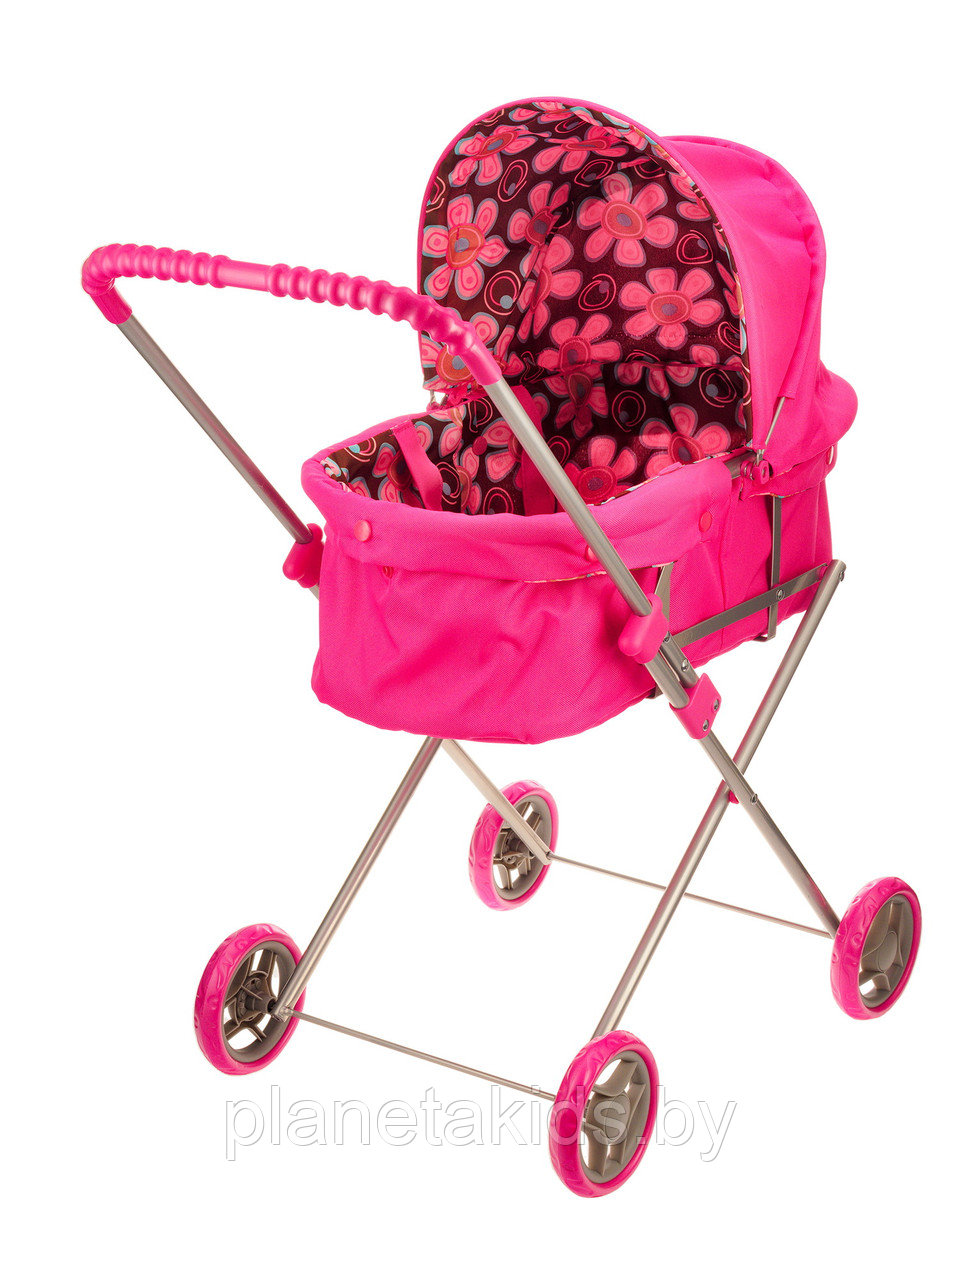 Игрушечная детская коляска для куклы MELOBO/MELOGO 9308-8 ,плотная ткань